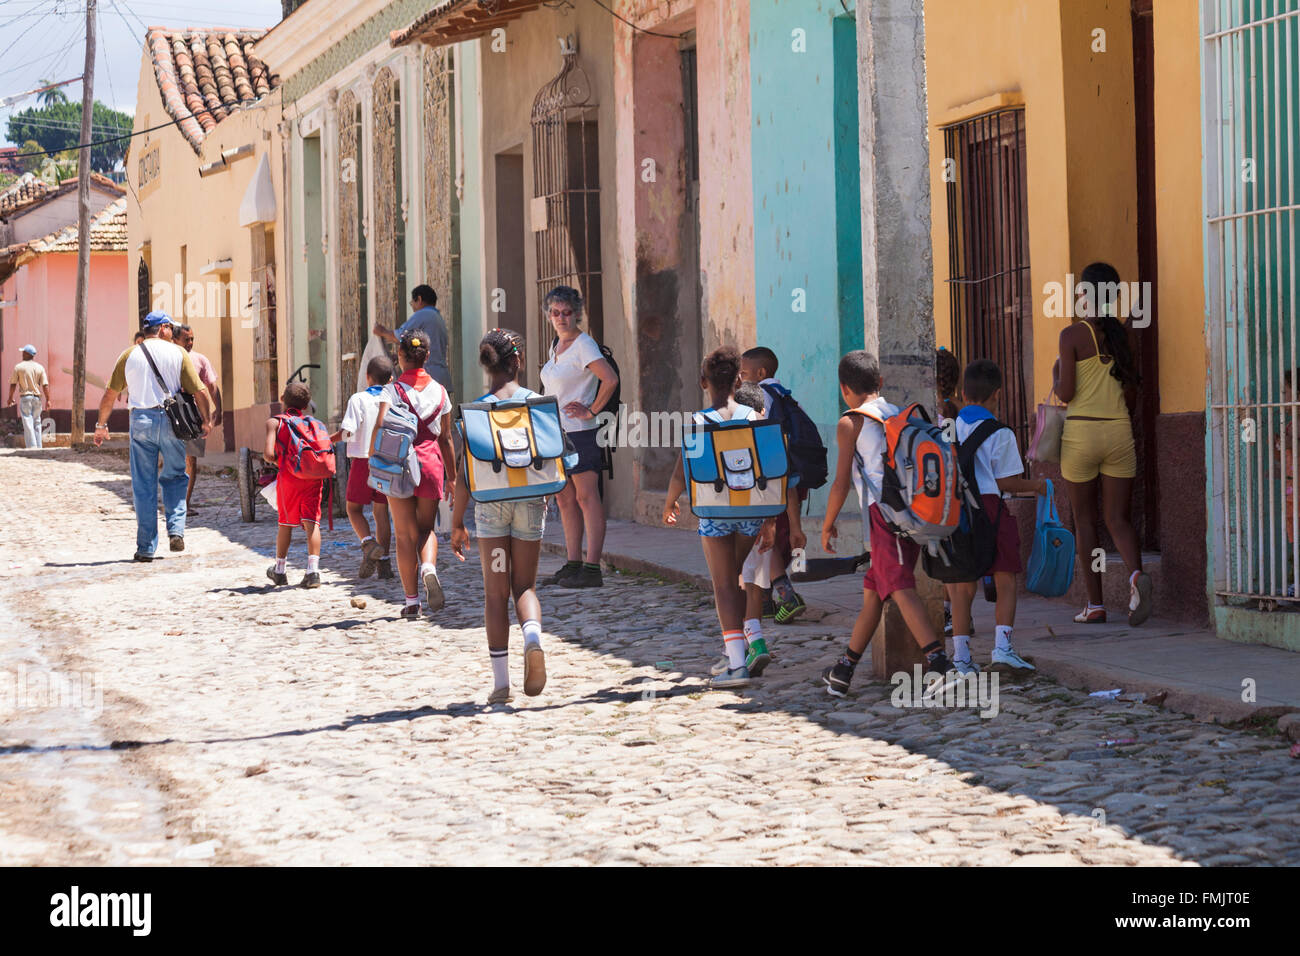 Vita quotidiana scena di strada con la scuola i bambini camminando per strada di ciottoli a Trinidad, Cuba nel Marzo Foto Stock